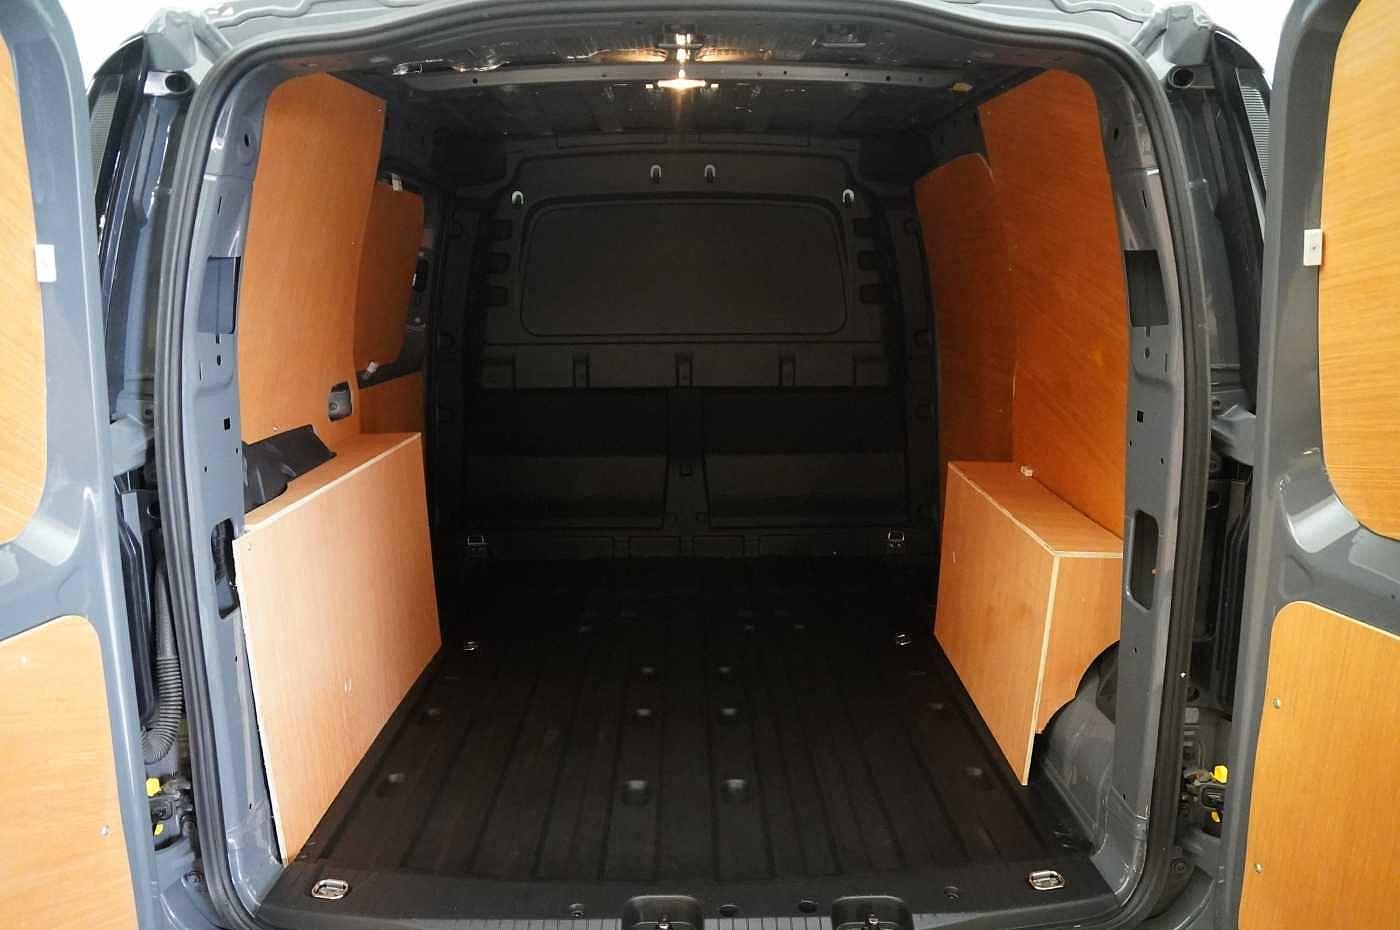 Volkswagen Caddy for sale from Western Volkswagen Van Centre